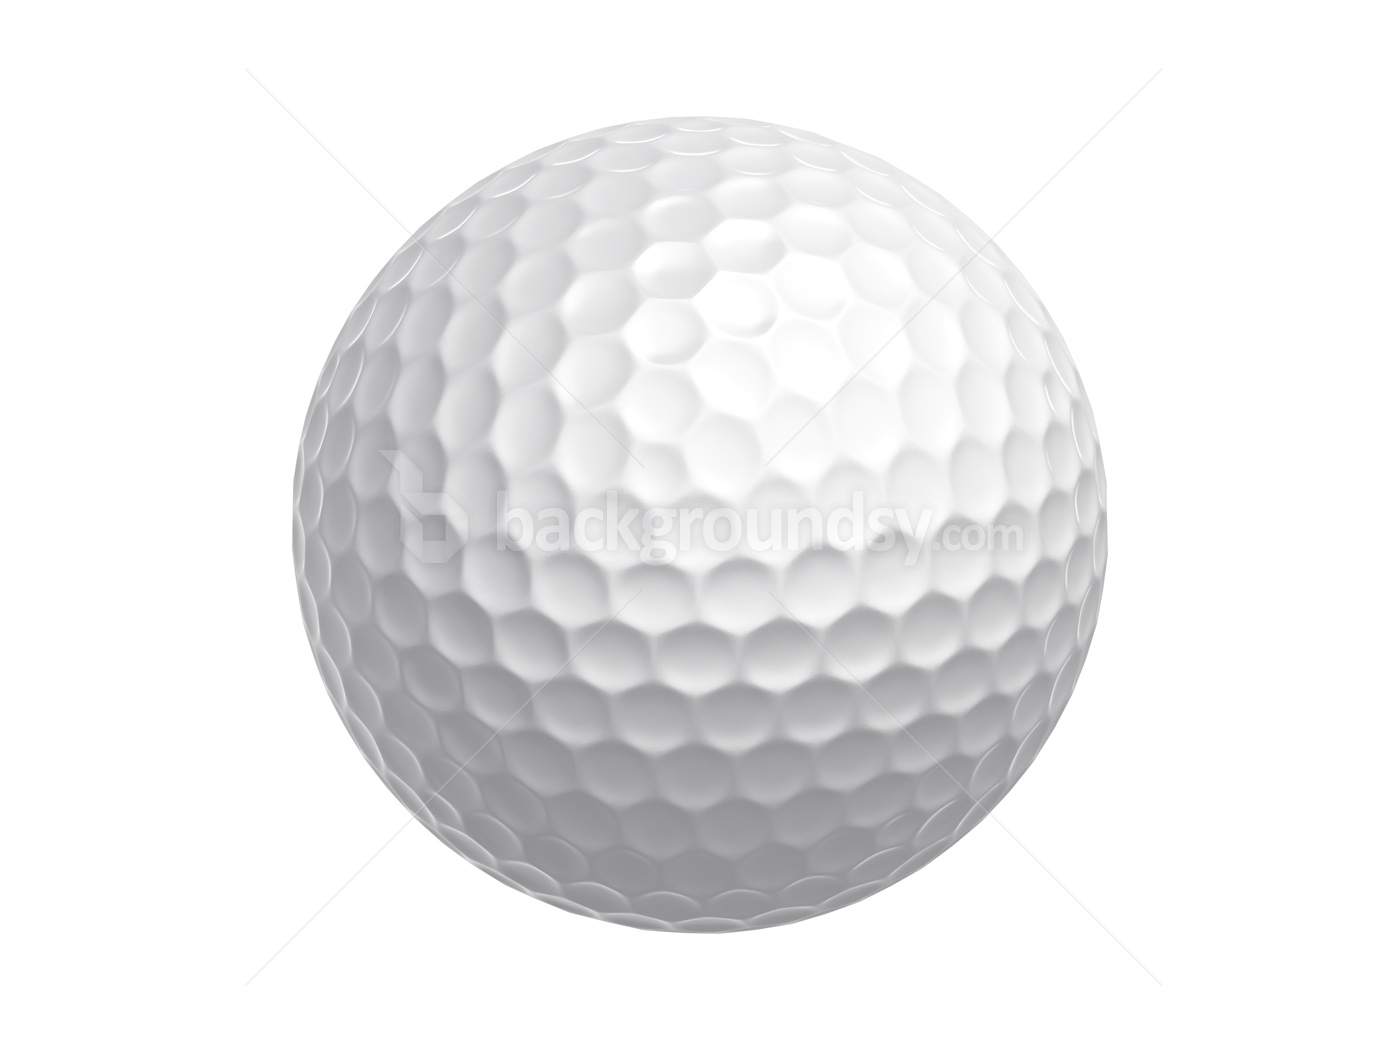 Golf ball clipart 13 - Clipart Golf Ball